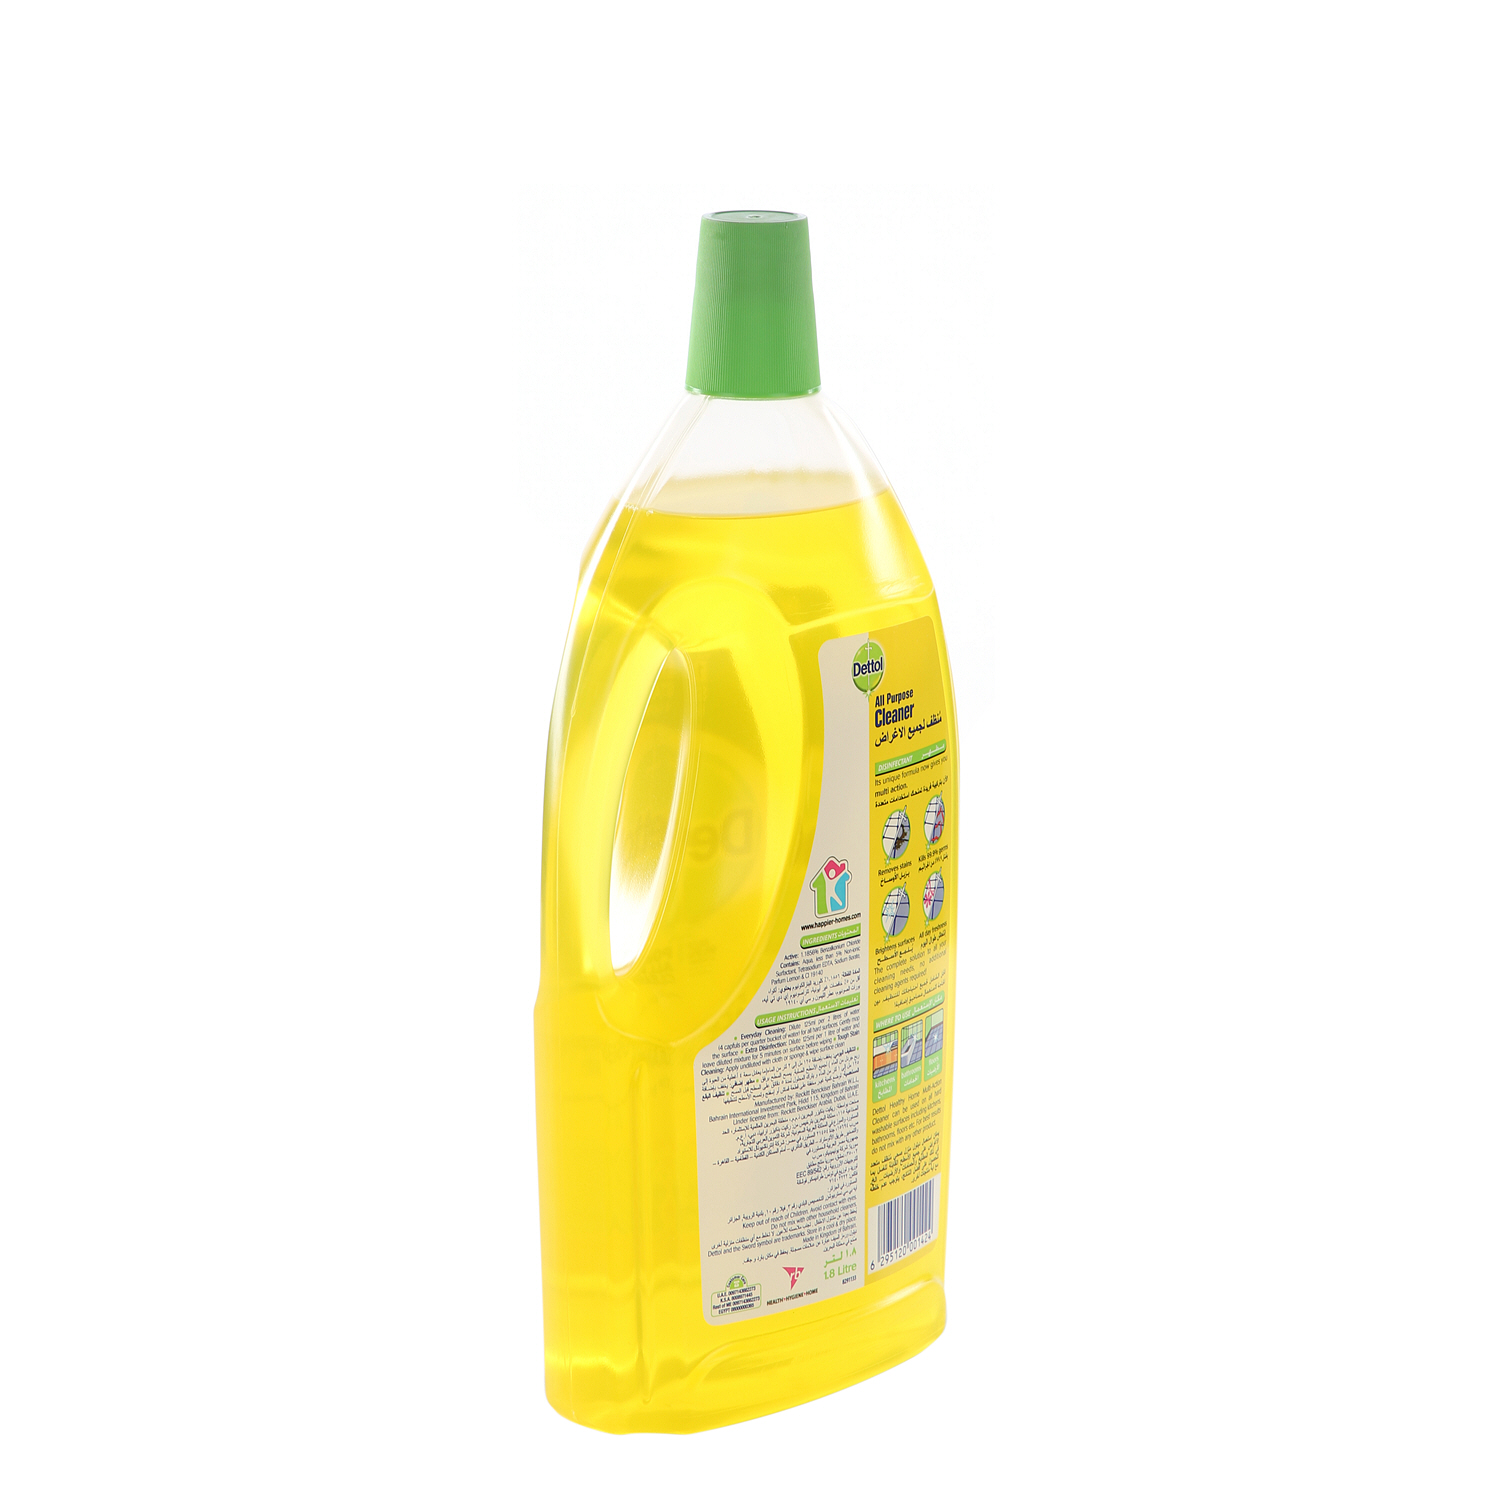 Dettol Multi Action Cleaner 4 In 1 Lemon 1.8 L